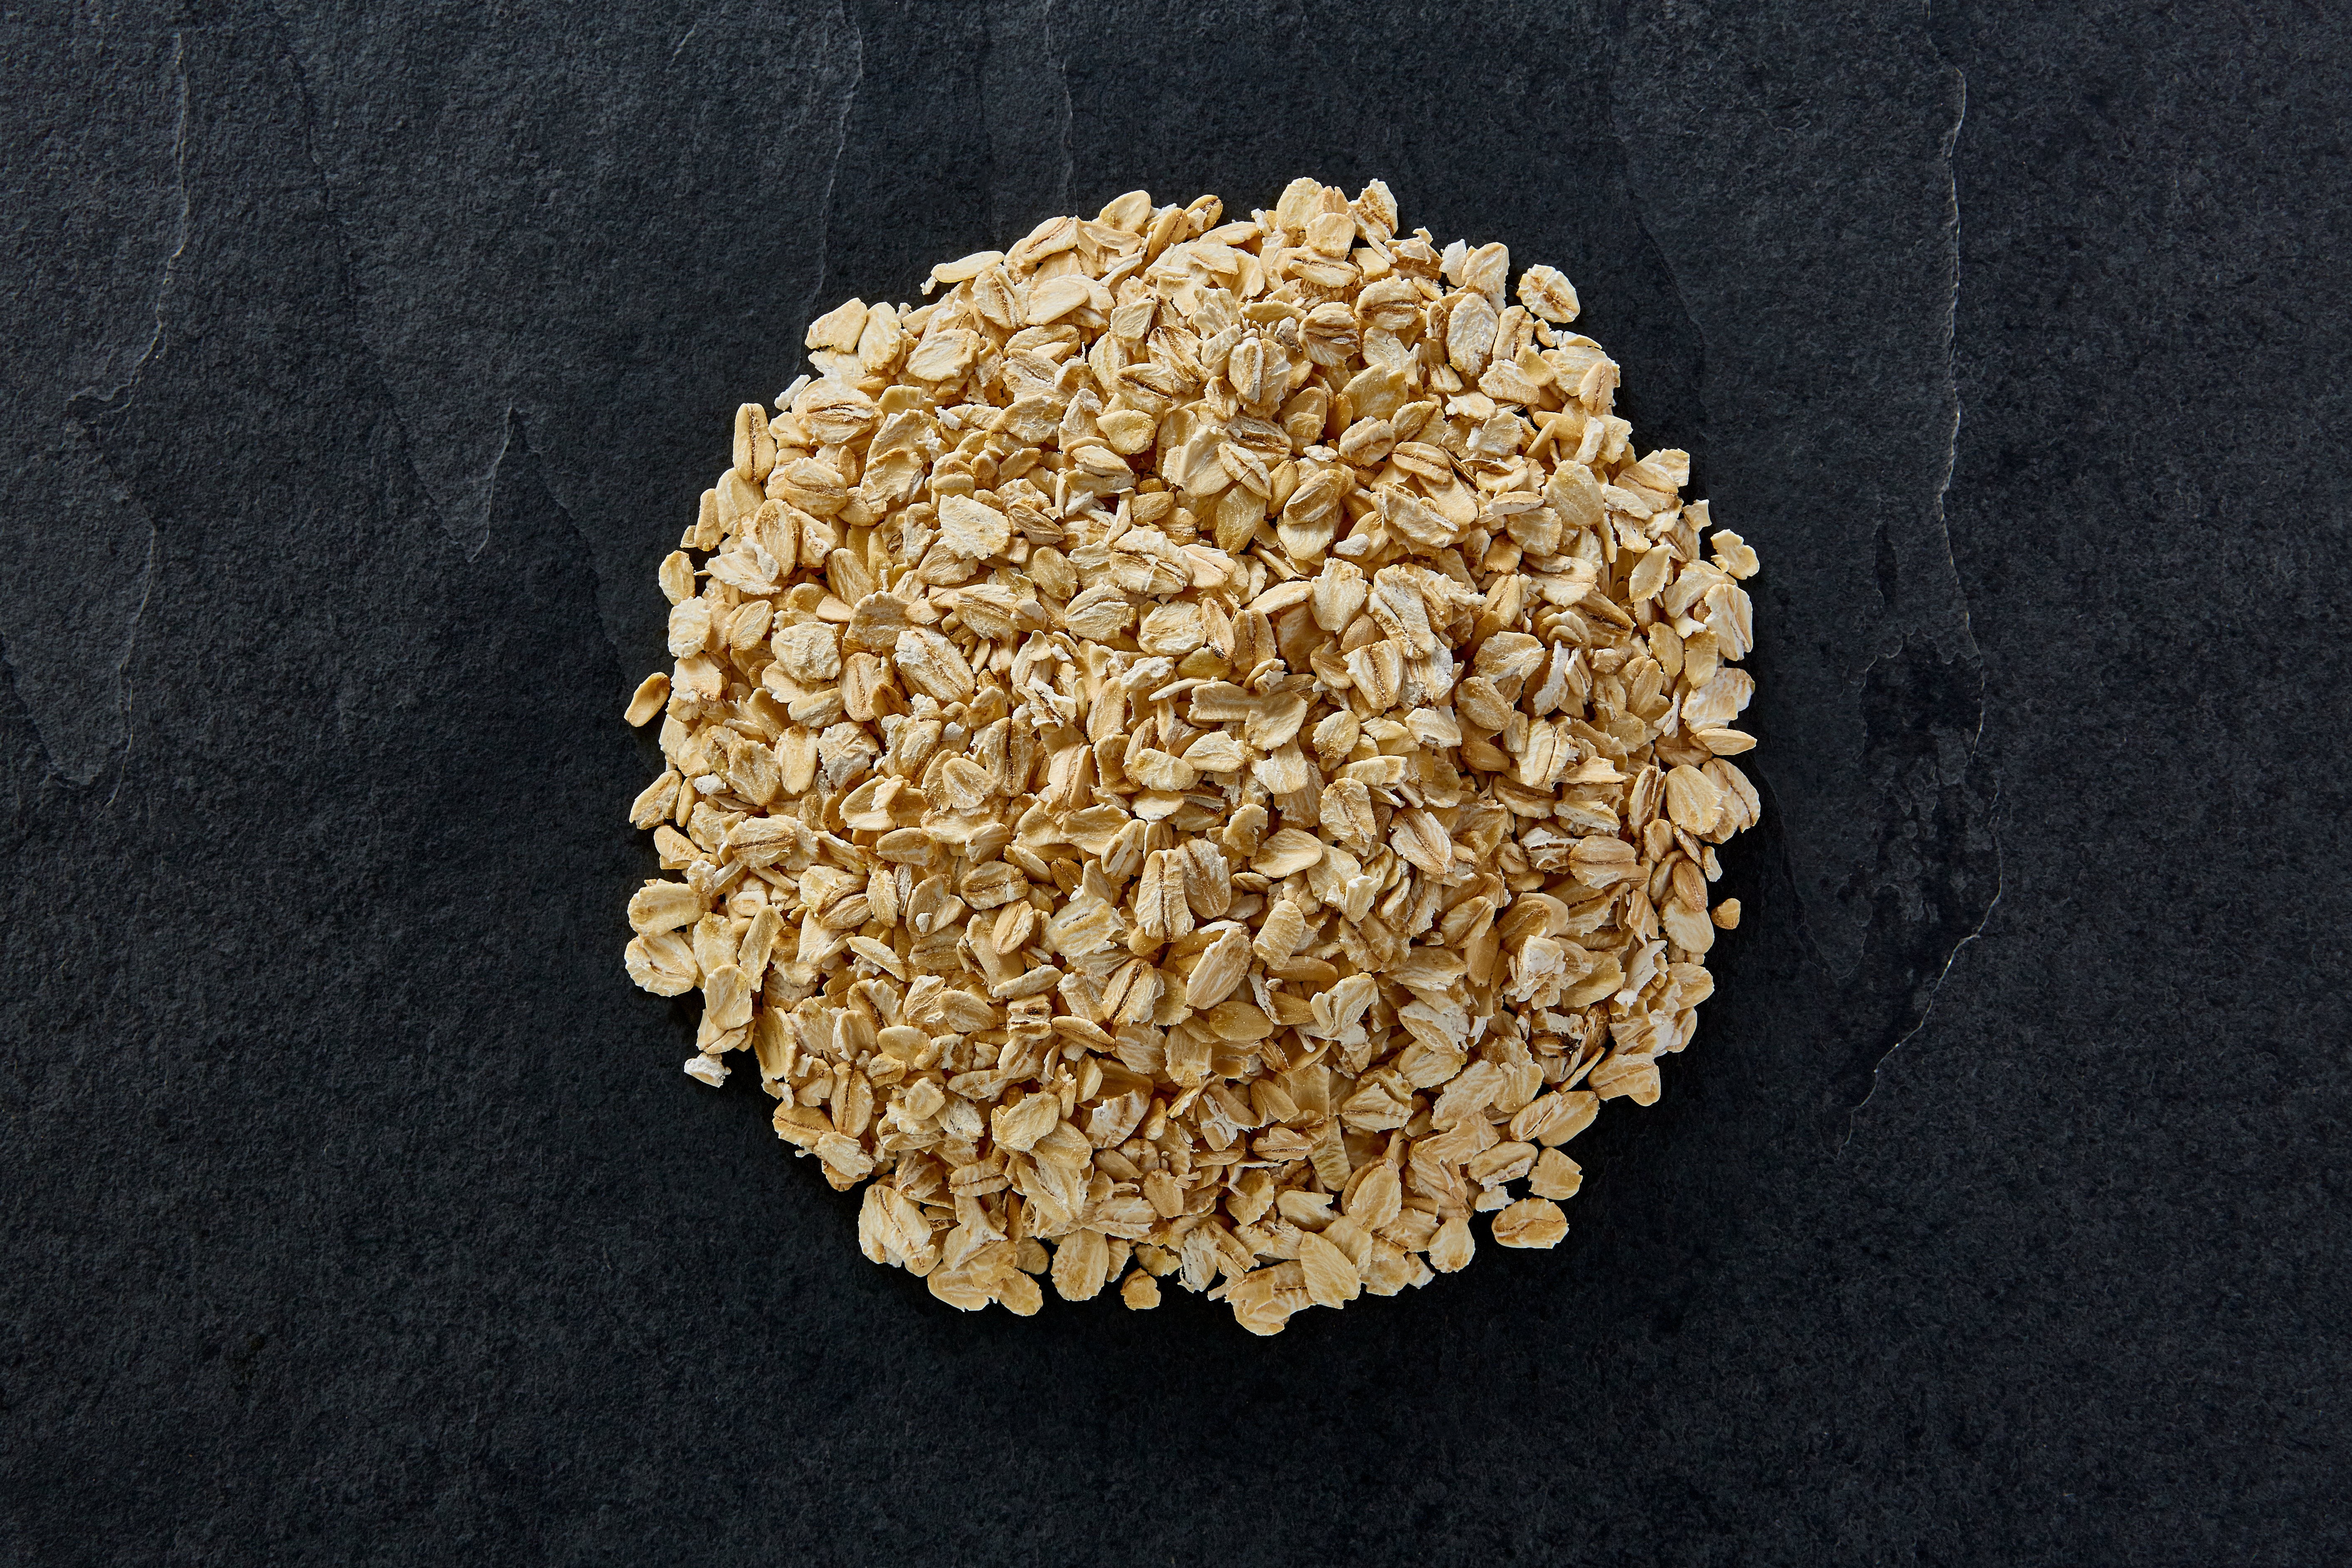 Jumbo oat flakes 26s - one of our most popular Jumbo oats